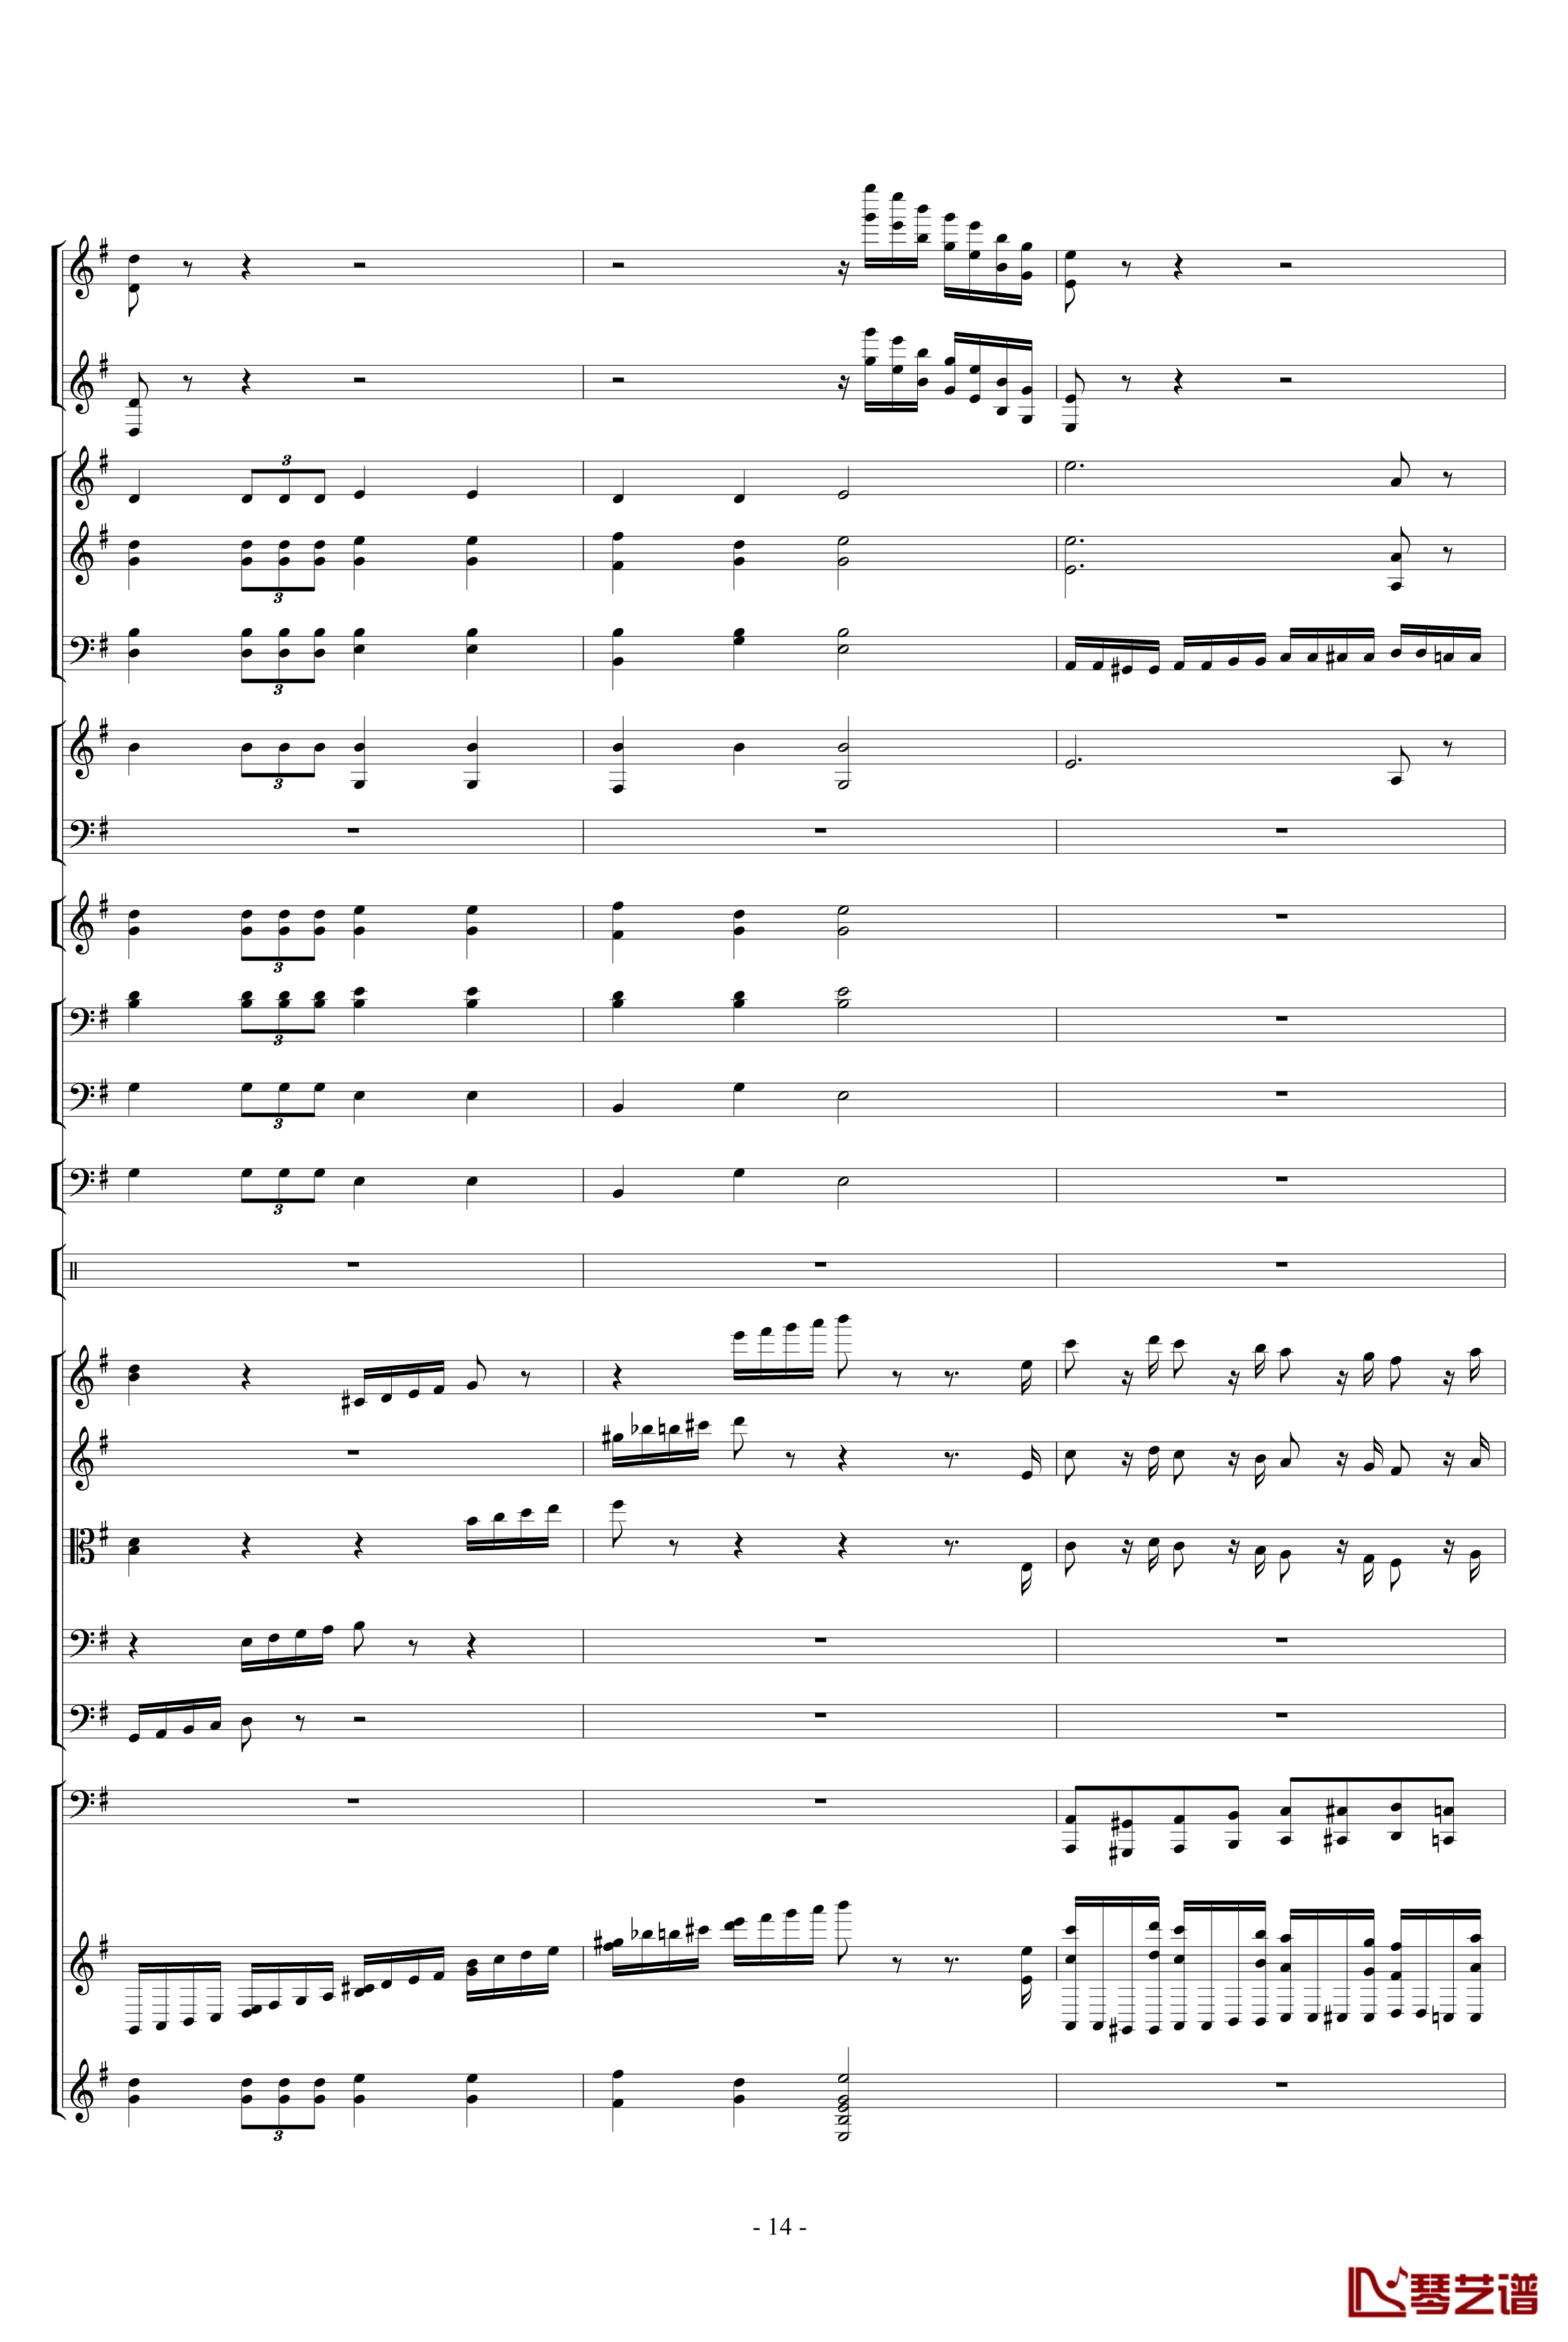 胡桃夹子组曲之进行曲钢琴谱-柴科夫斯基-Peter Ilyich Tchaikovsky14